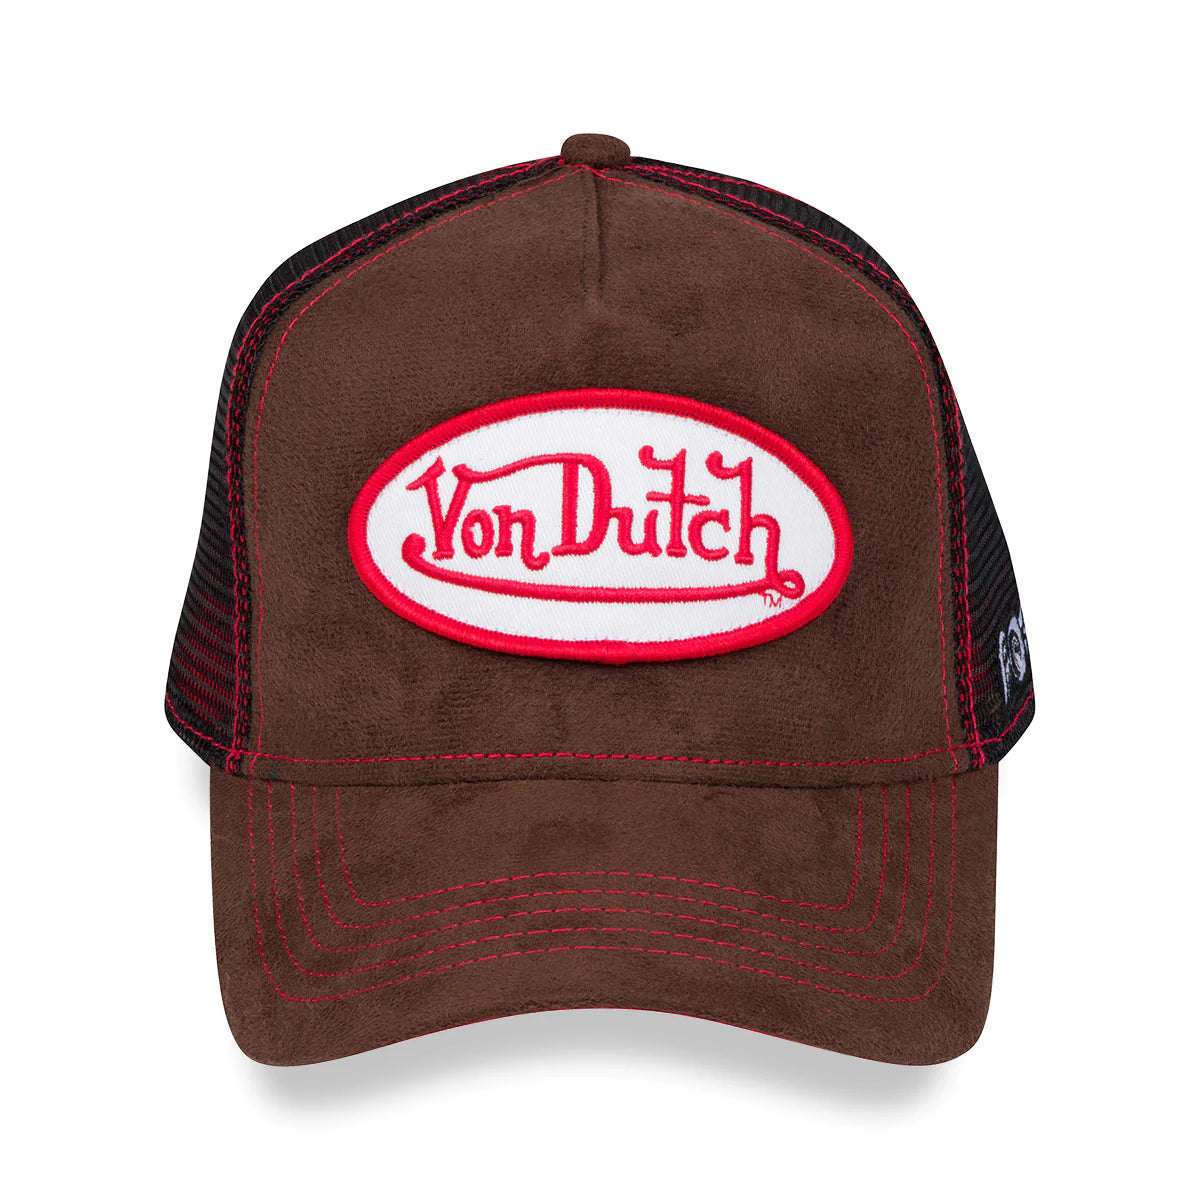 Von Dutch Brown & Red Trucker Hat